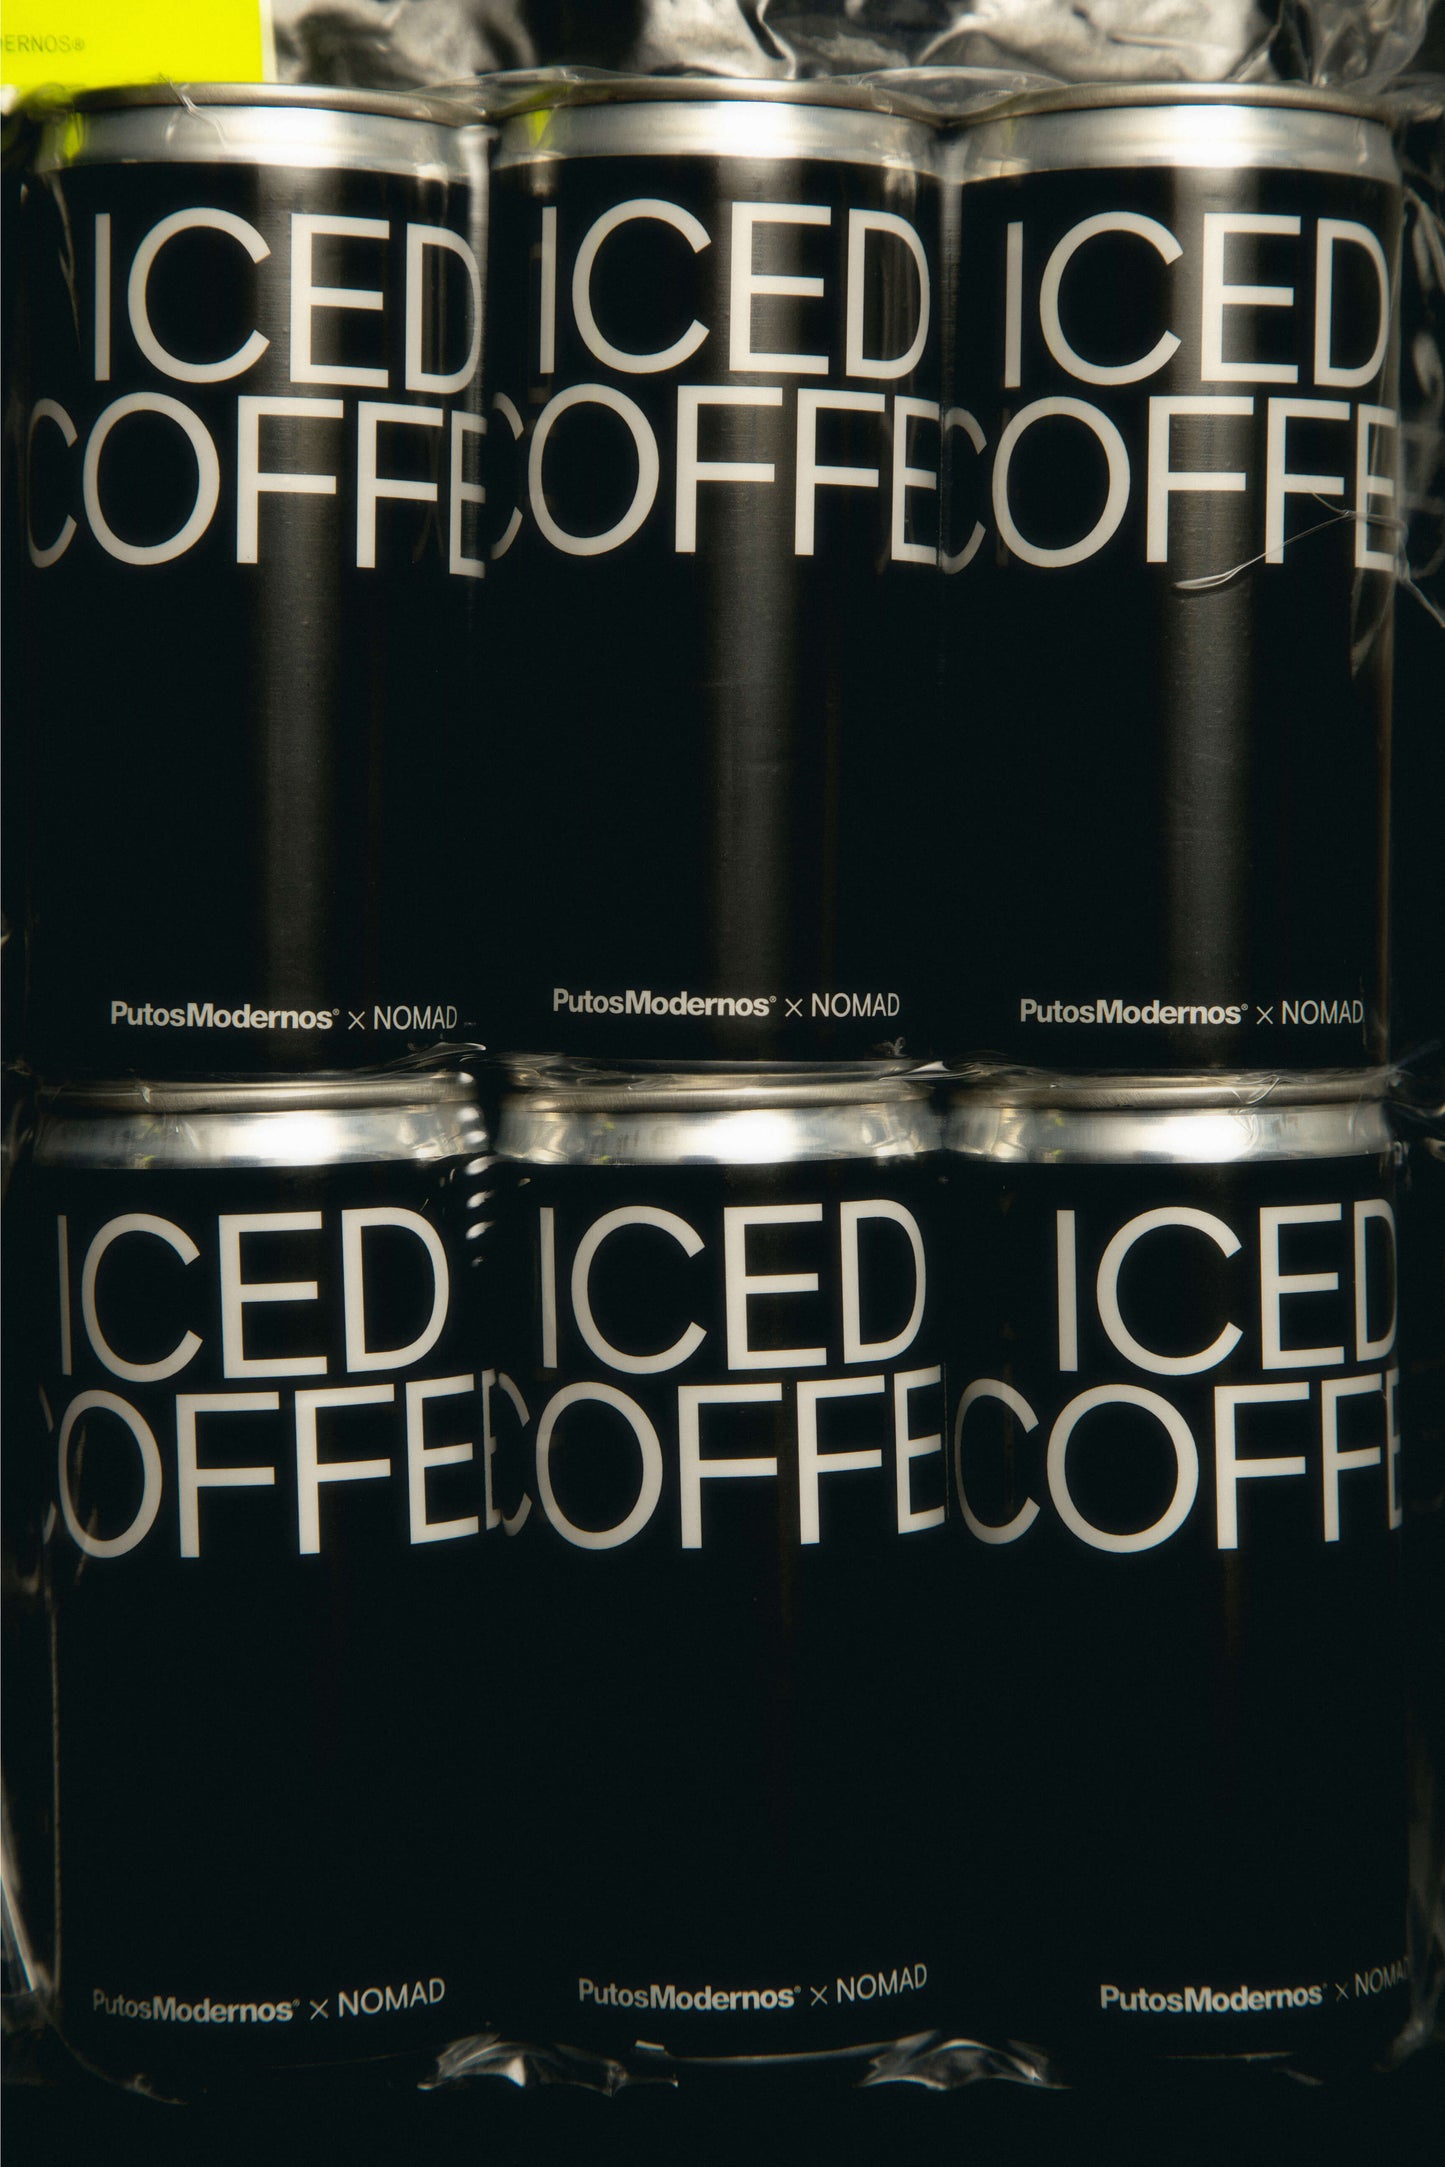 Yo traigo el café - Iced Coffee